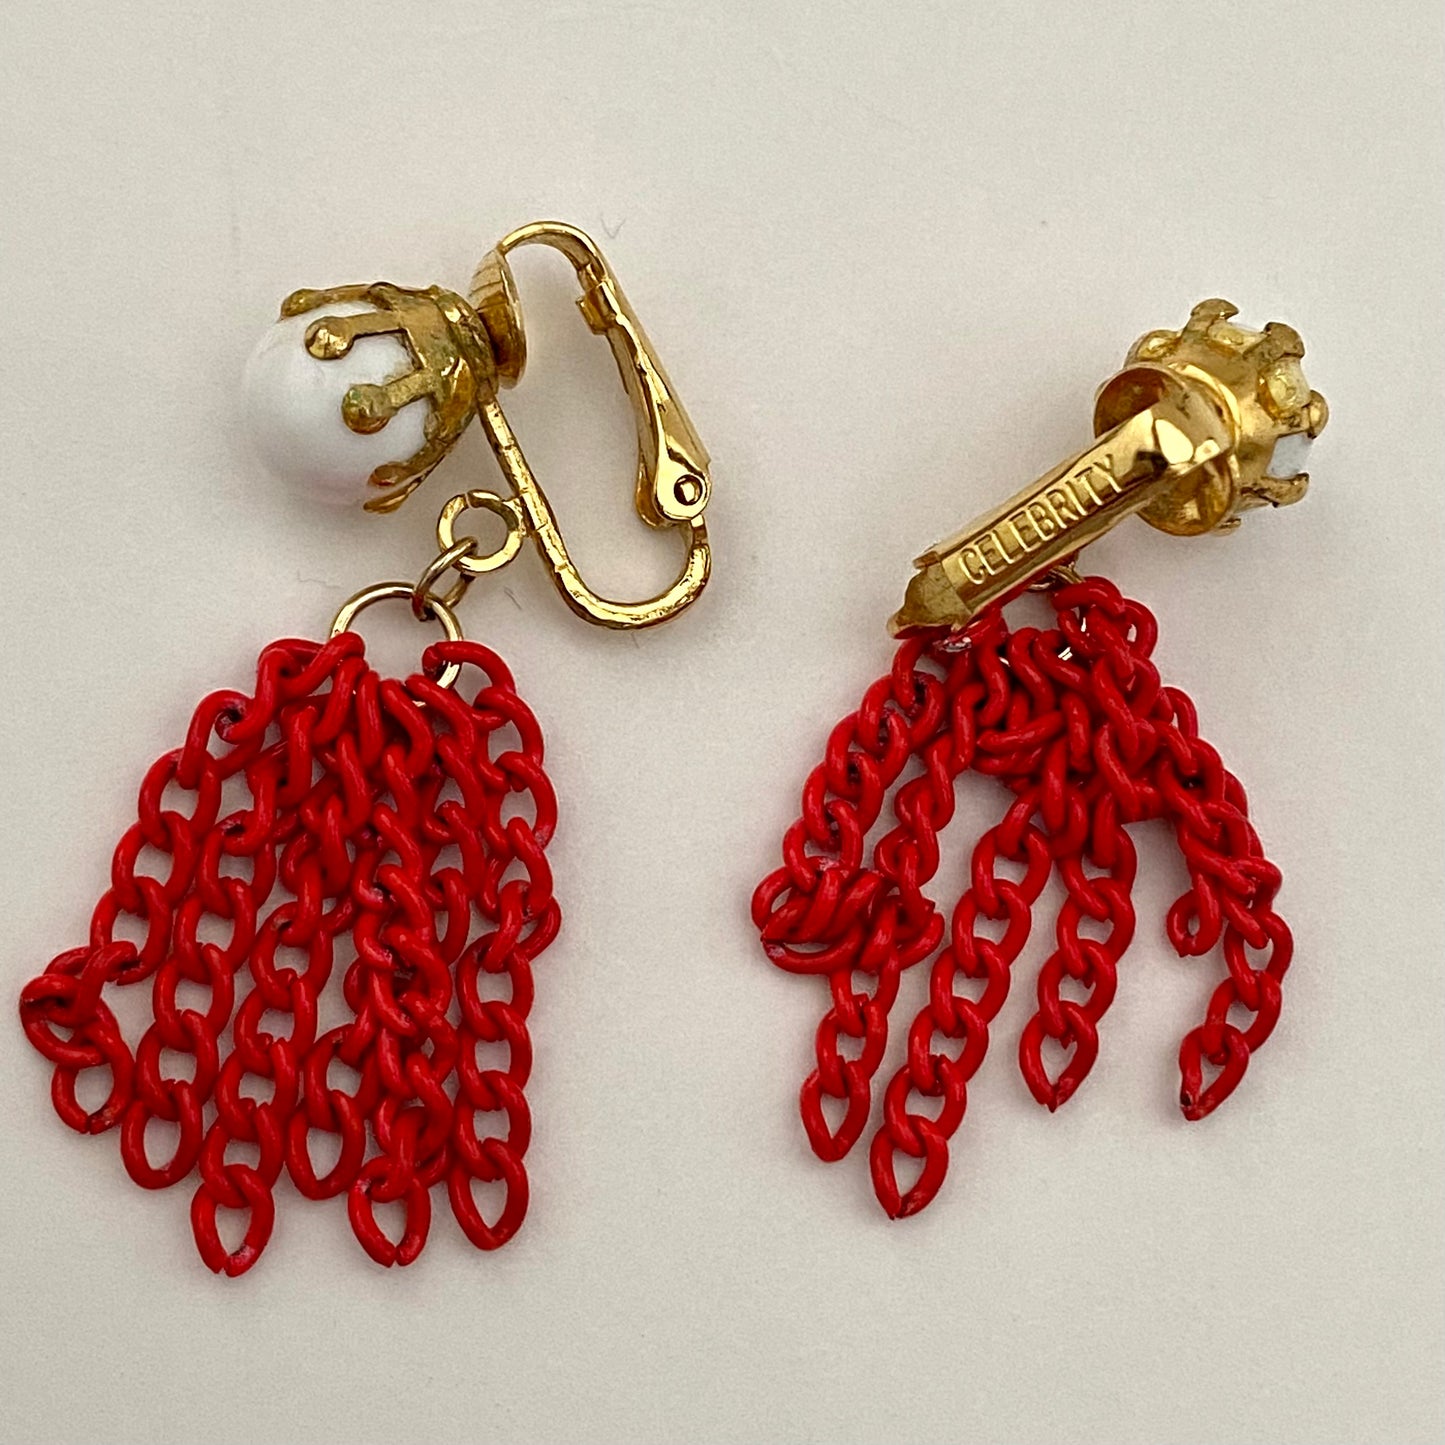 1960s Celebrity White & Red Earrings